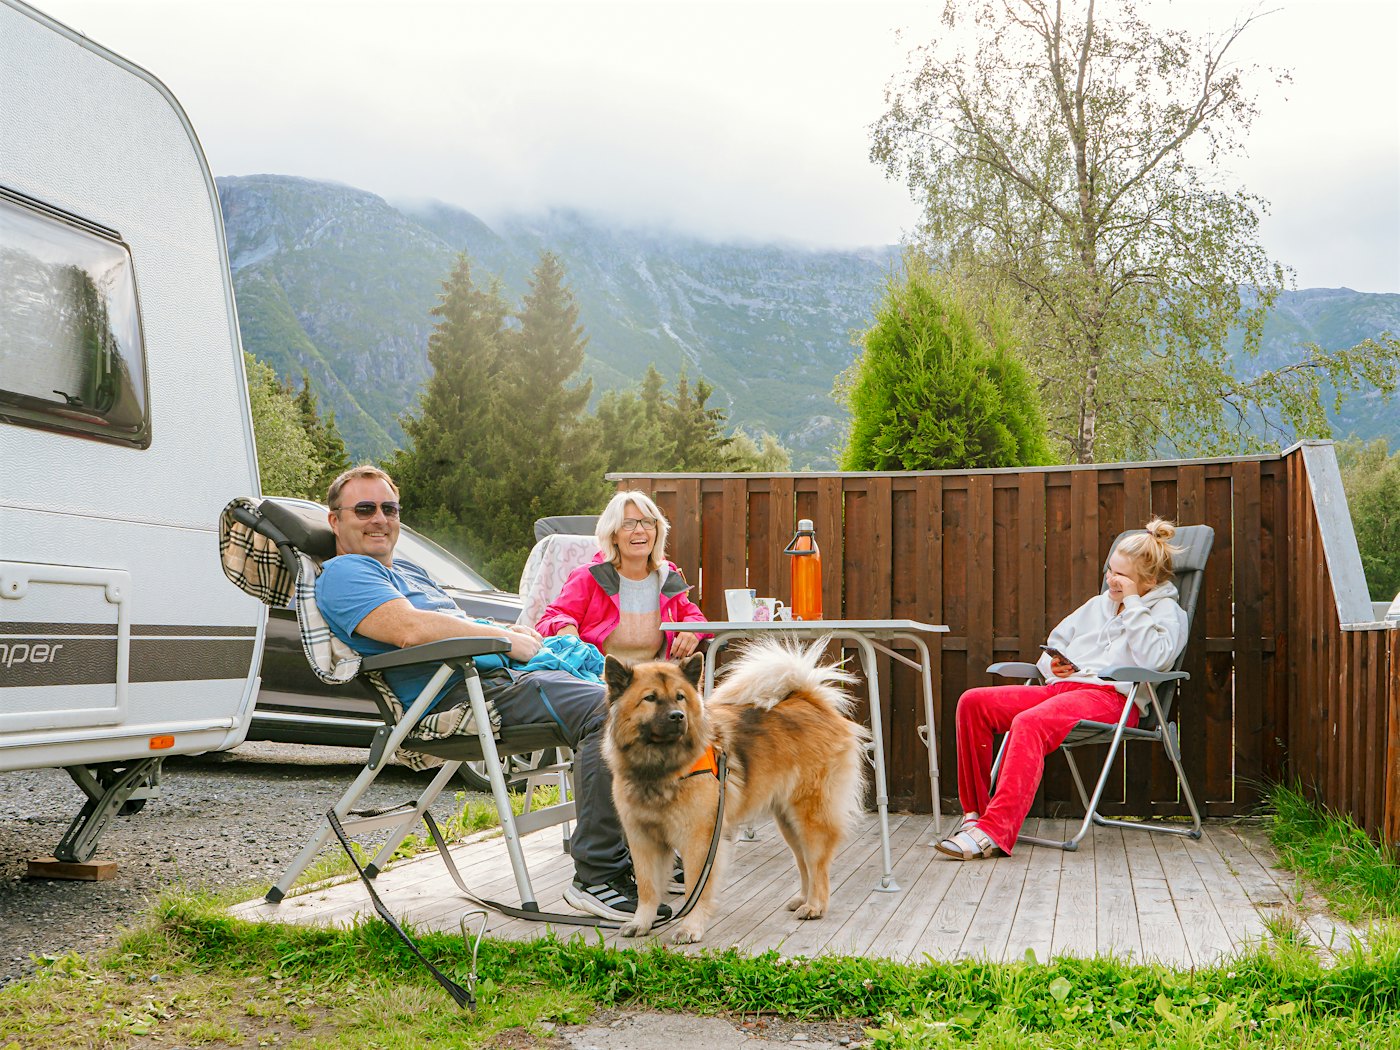 Mann, kvinne og barn sitter i hver sin campingstol rundt et bord vedsiden av campingvogn. Foran er det lys hund i bånd. Bak dem er det levegg, skog og fjell.